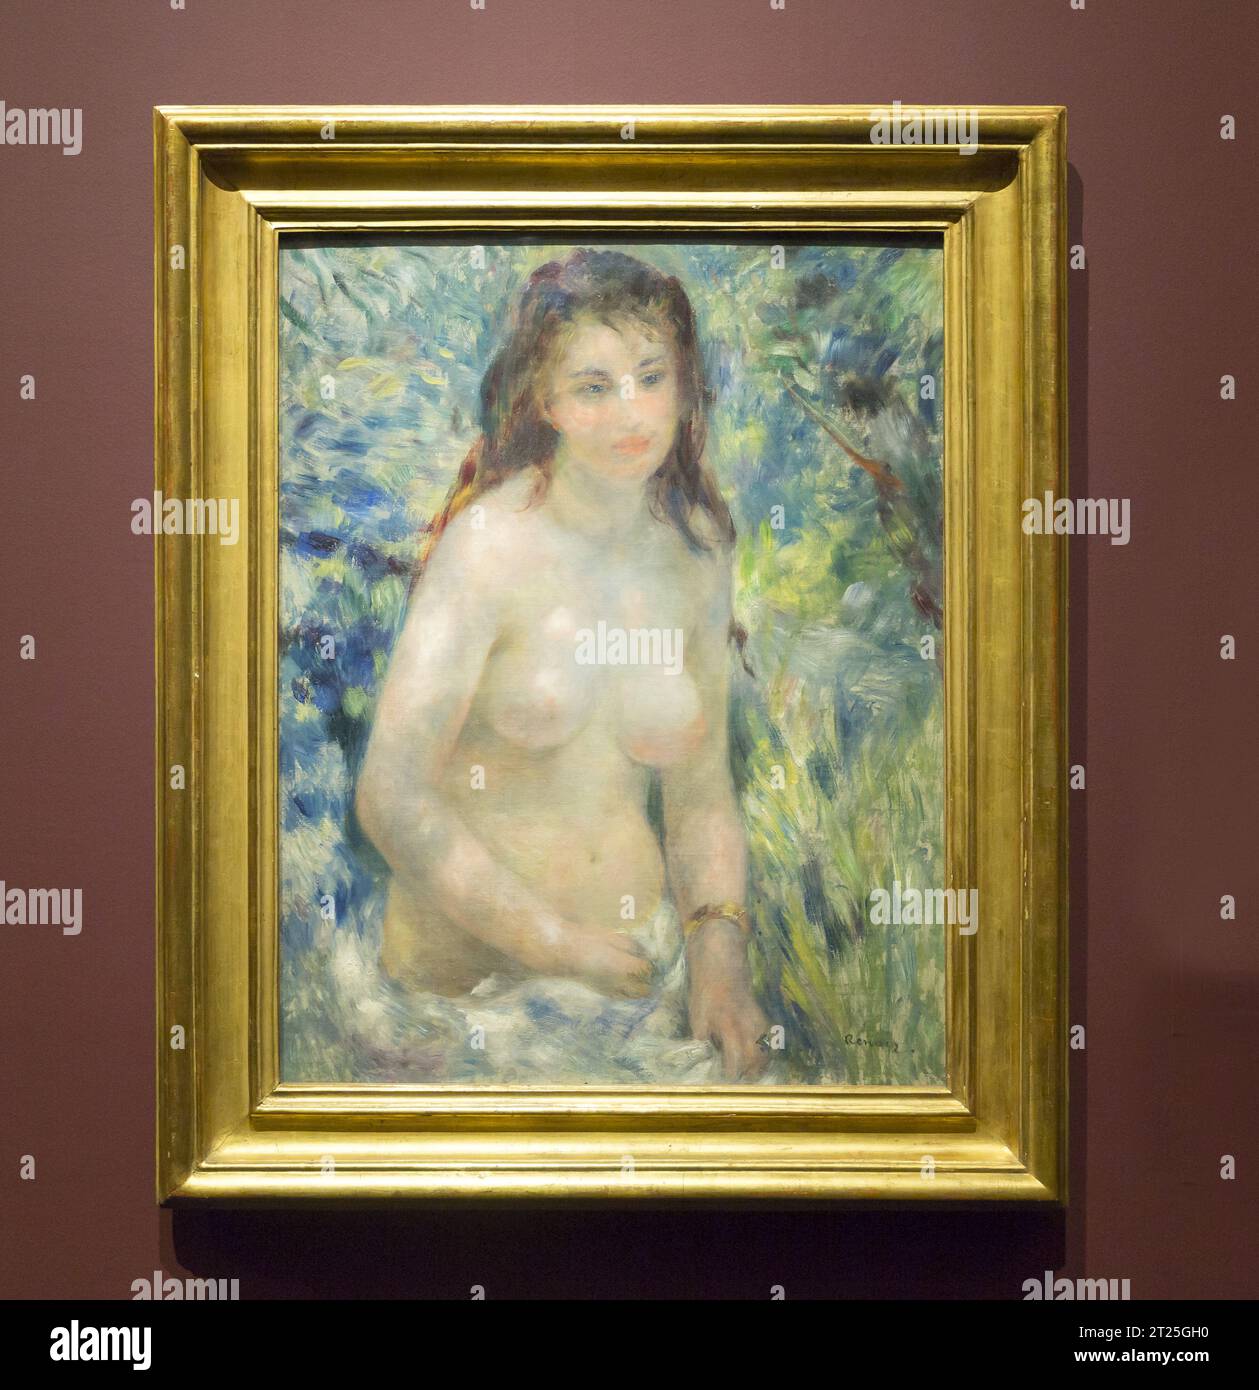 Pintura del artista francés Renoir Foto de stock